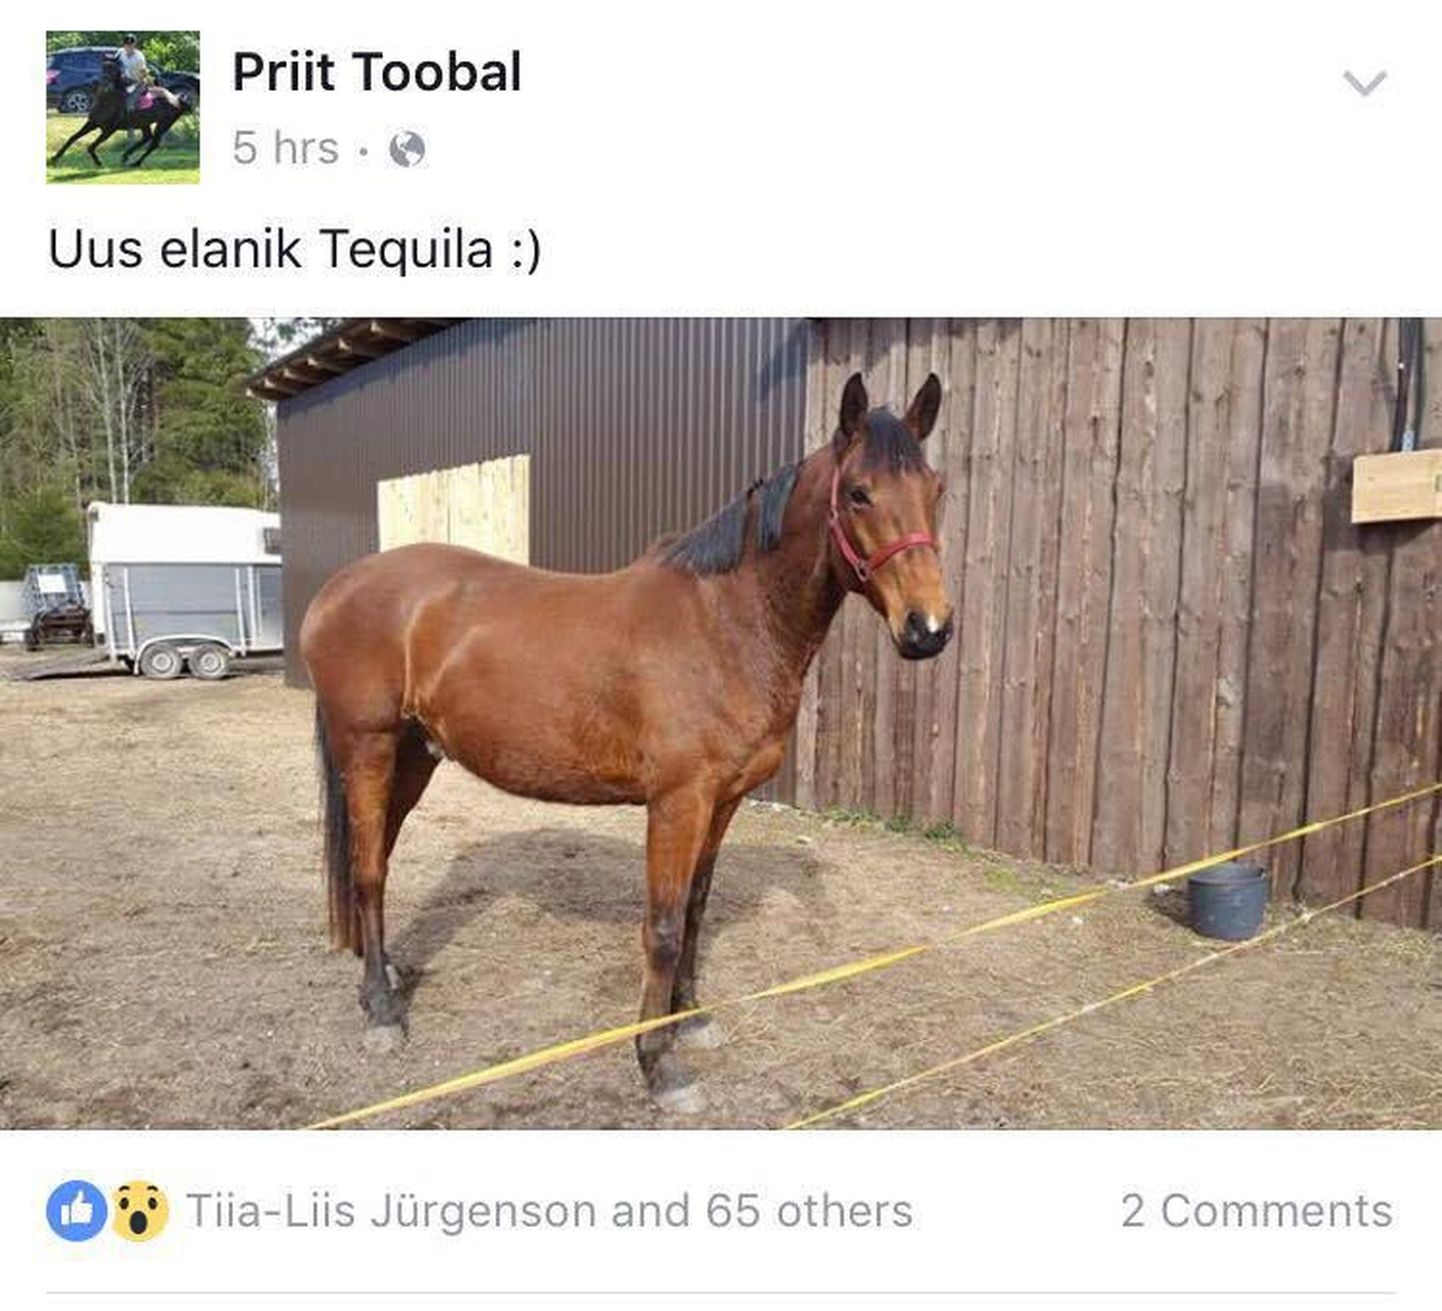 Priit Toobal pani oma hobusele huvitava nime, milleks on Tequila